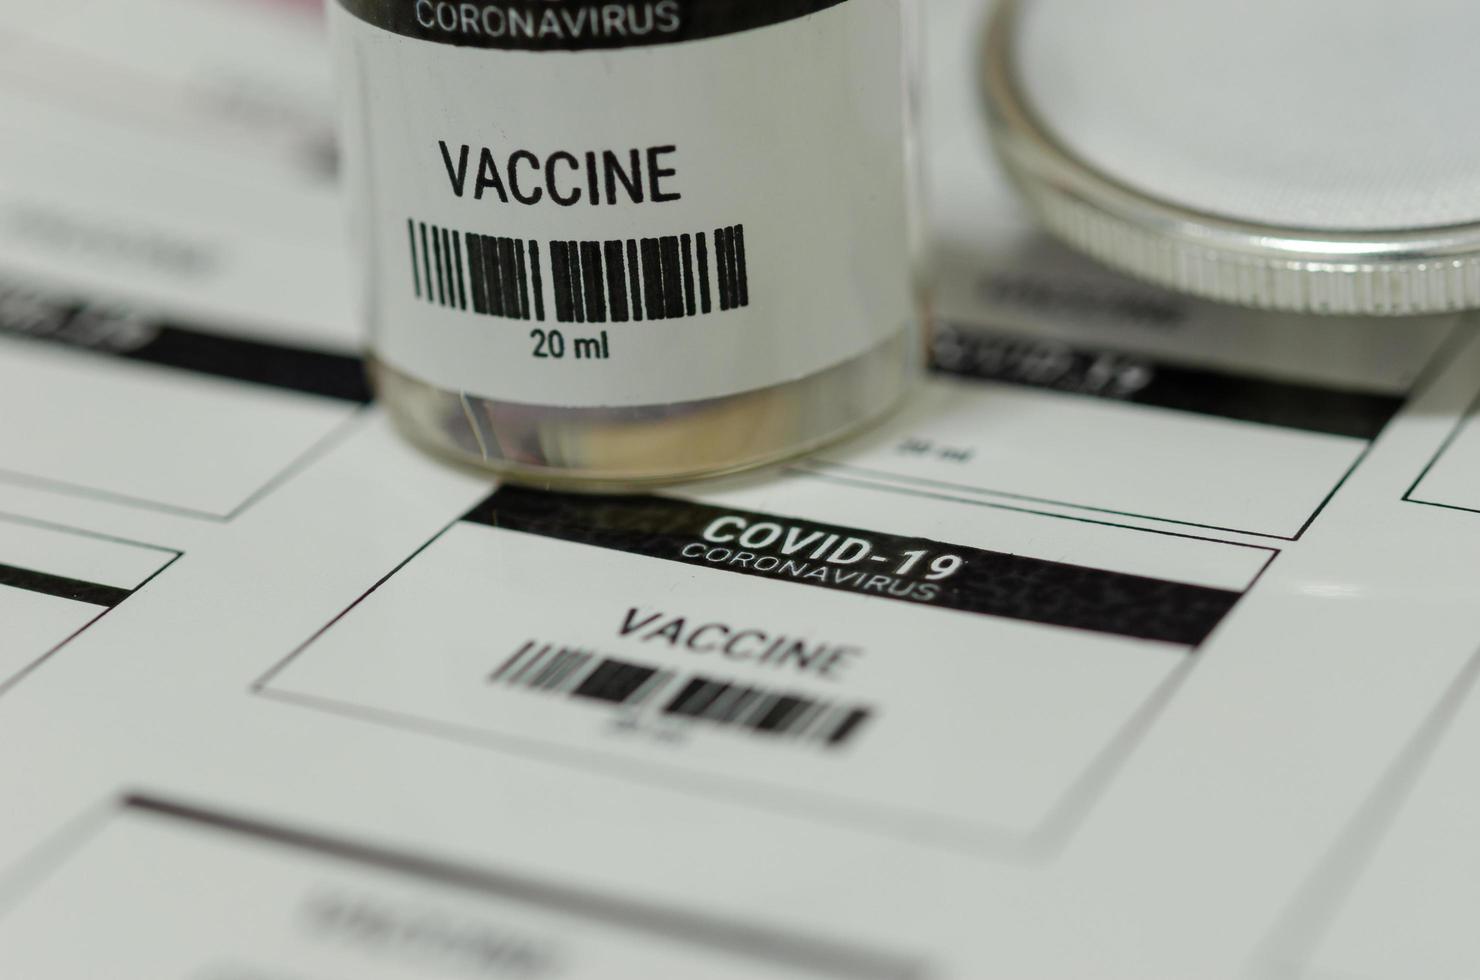 etiquetas de medicamentos y frascos de vacunas covid-19 foto